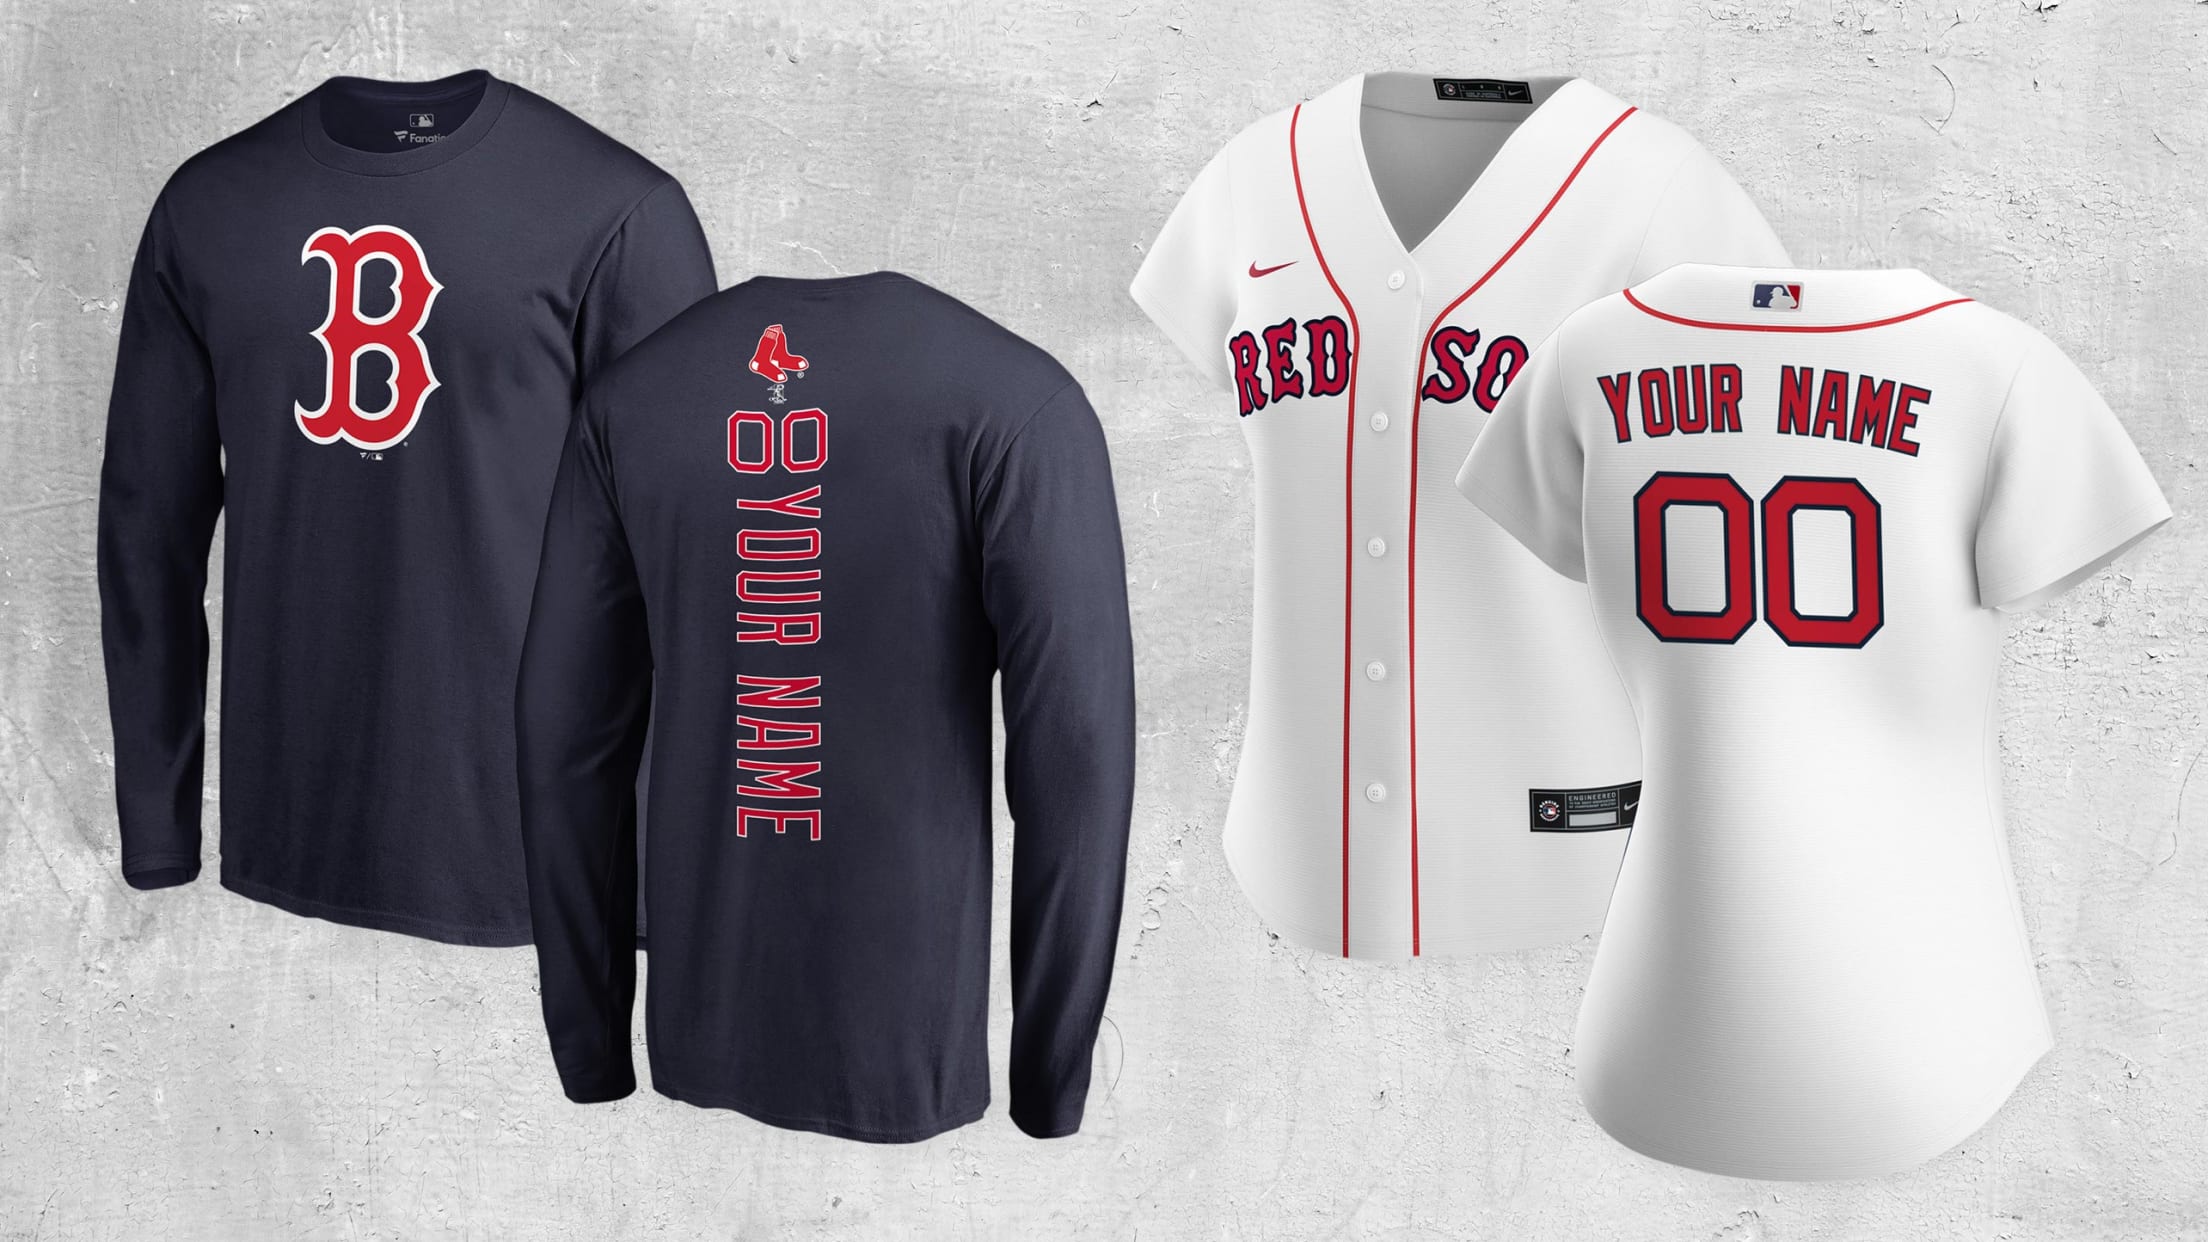 Boston Red Sox Merchandise, Gifts & Fan Gear - SportsUnlimited.com